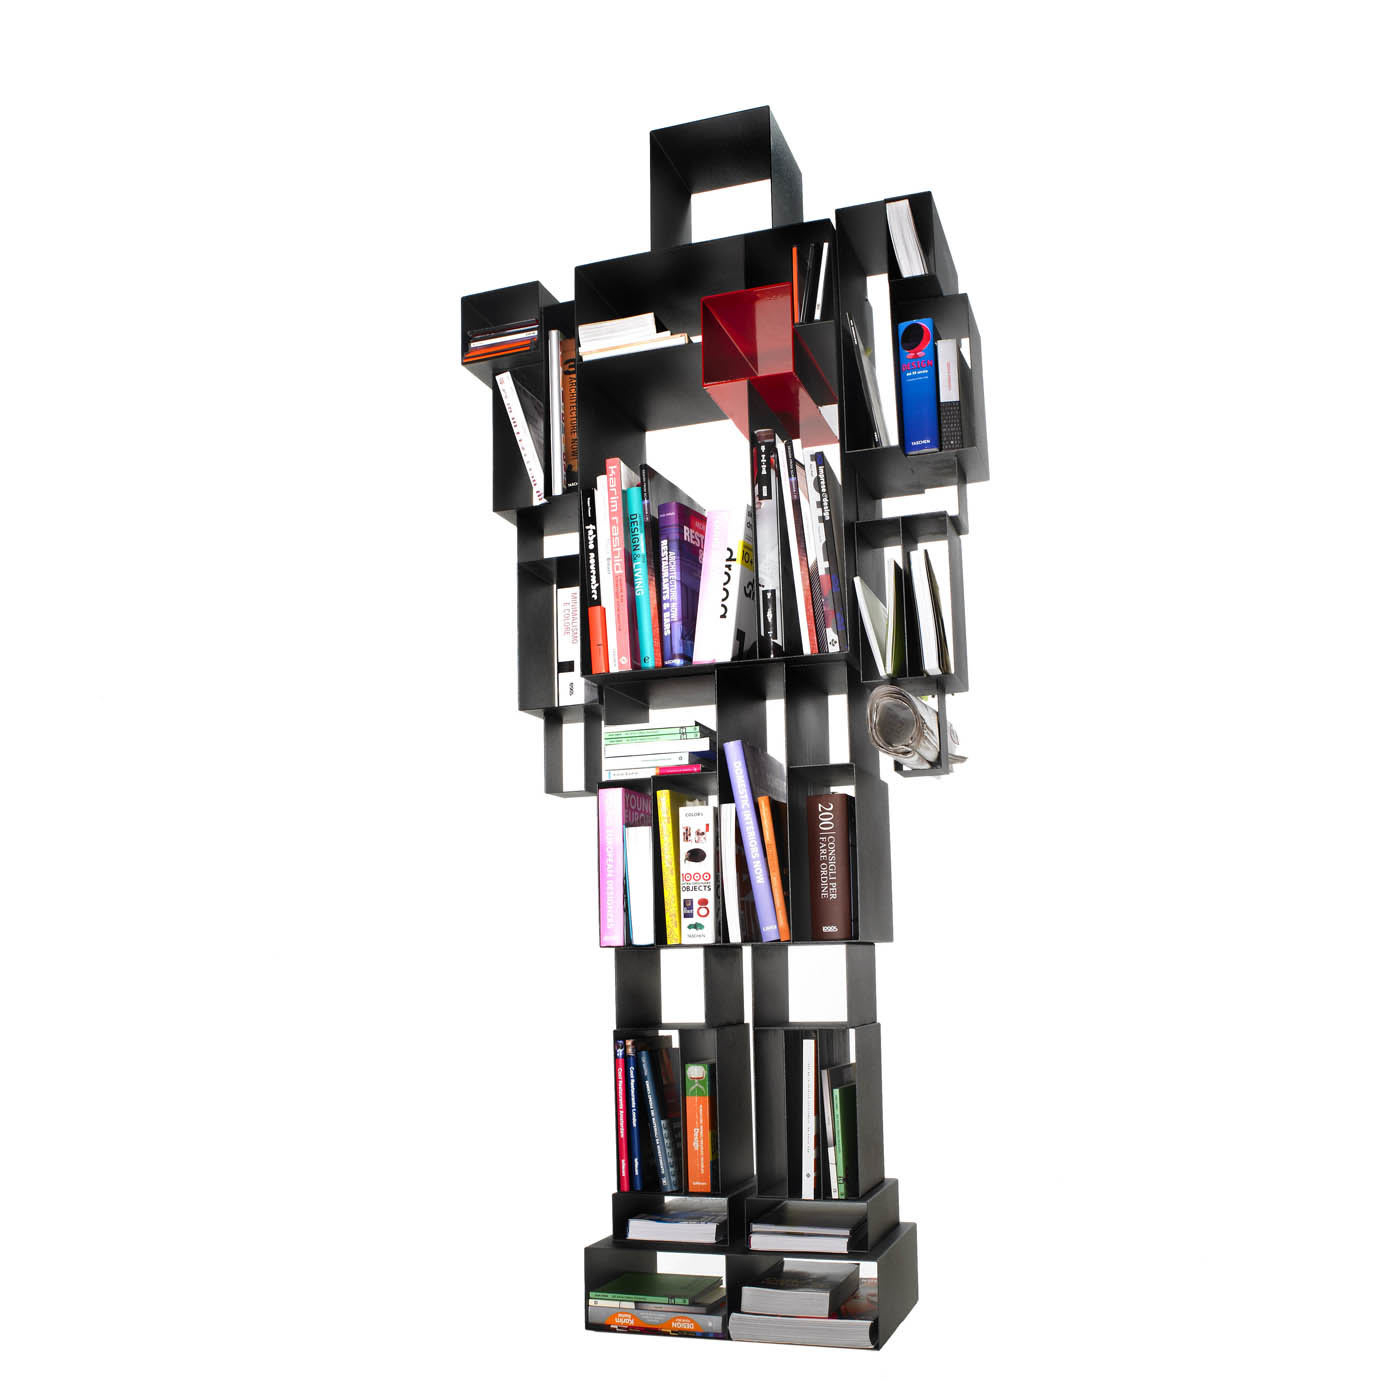 Robox Gray Freestanding Bookshelf by Fabio Novembre - Casamania